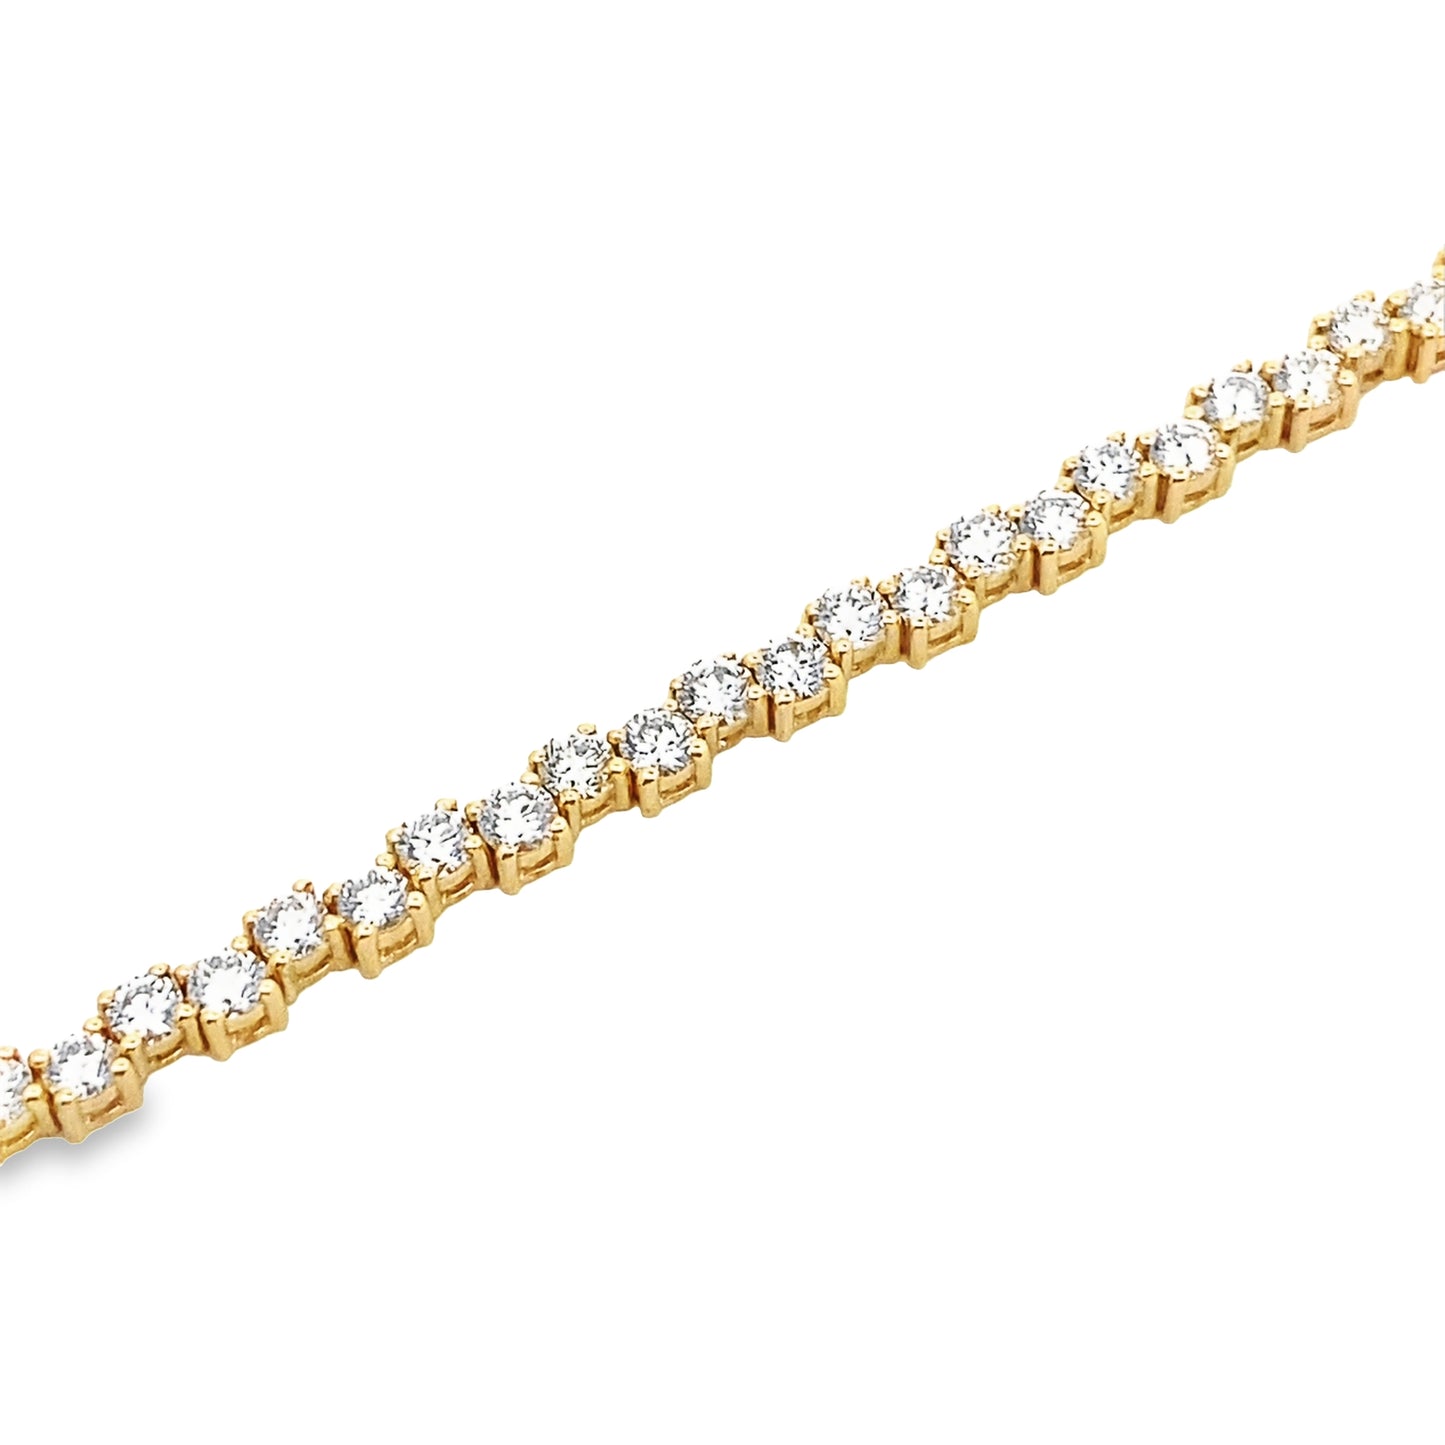 Staggered 14K Gold Diamond Tennis Bracelet